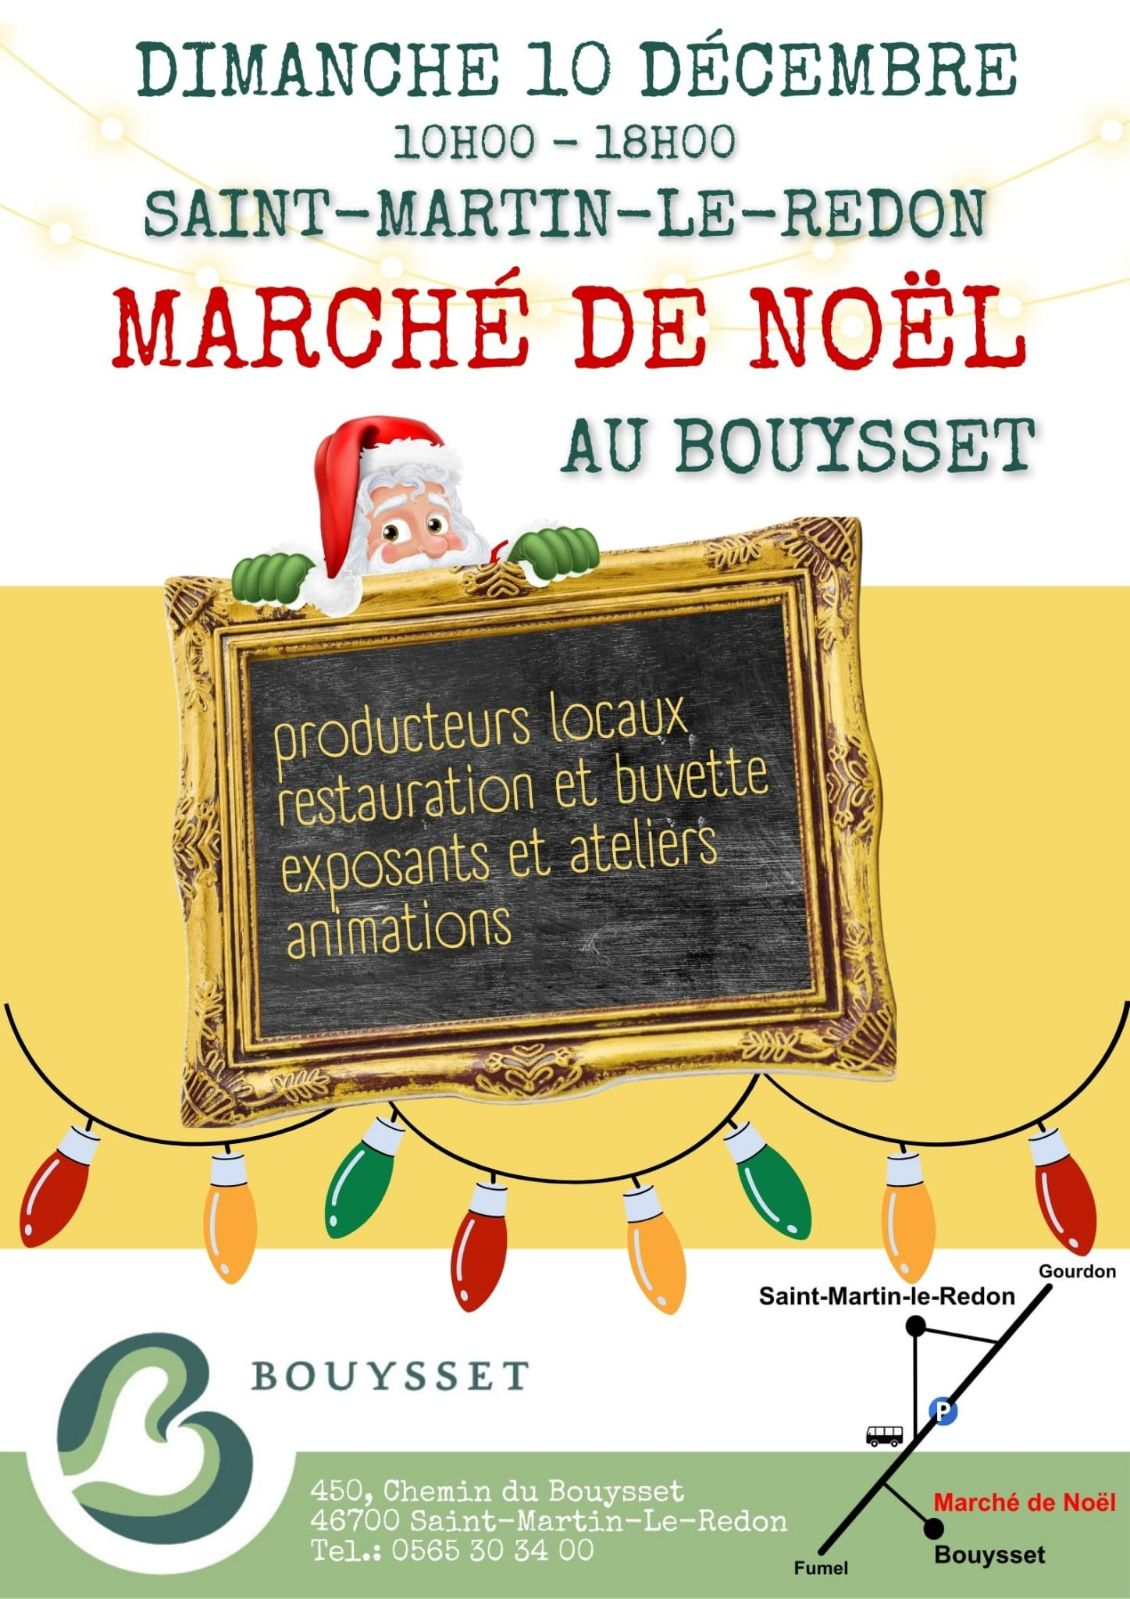 Figeac : Marché de Noël au Bouysset